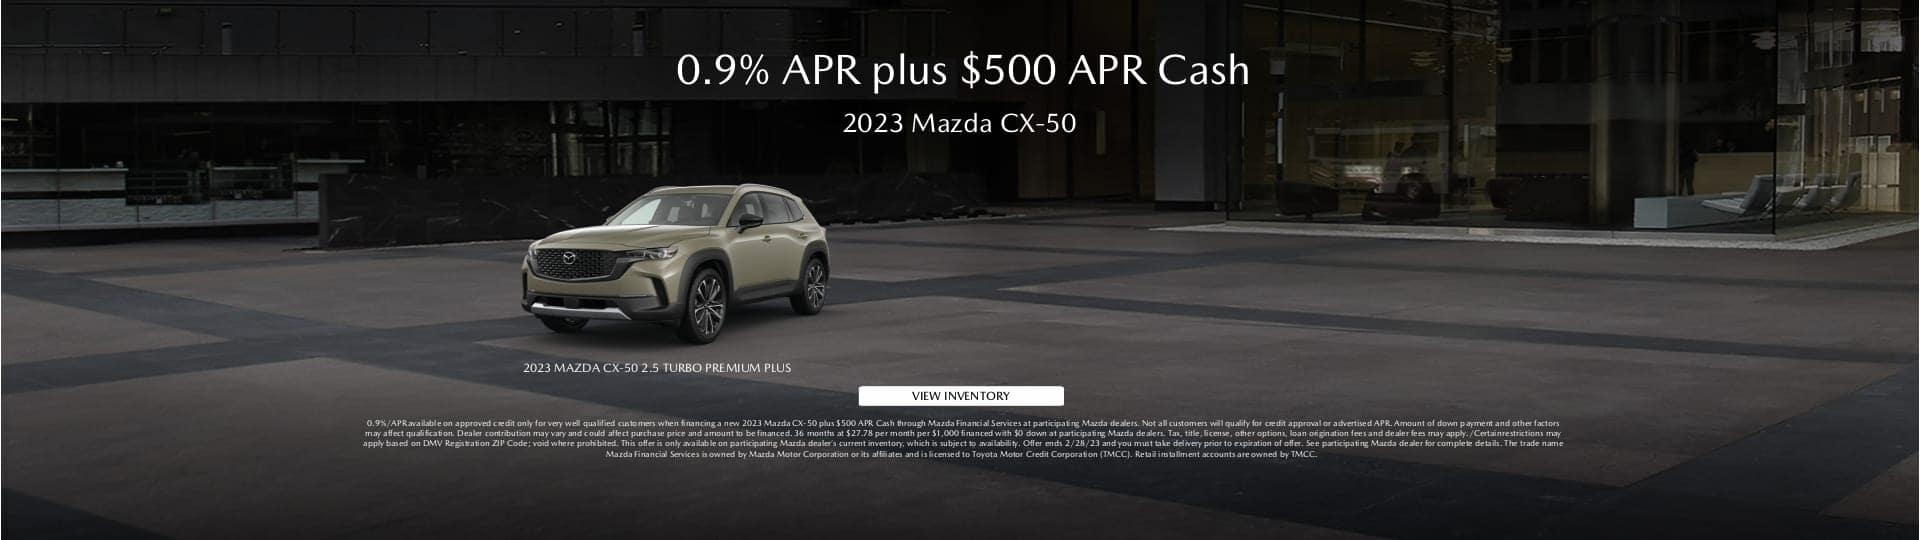 2023 Mazda CX-50 offer